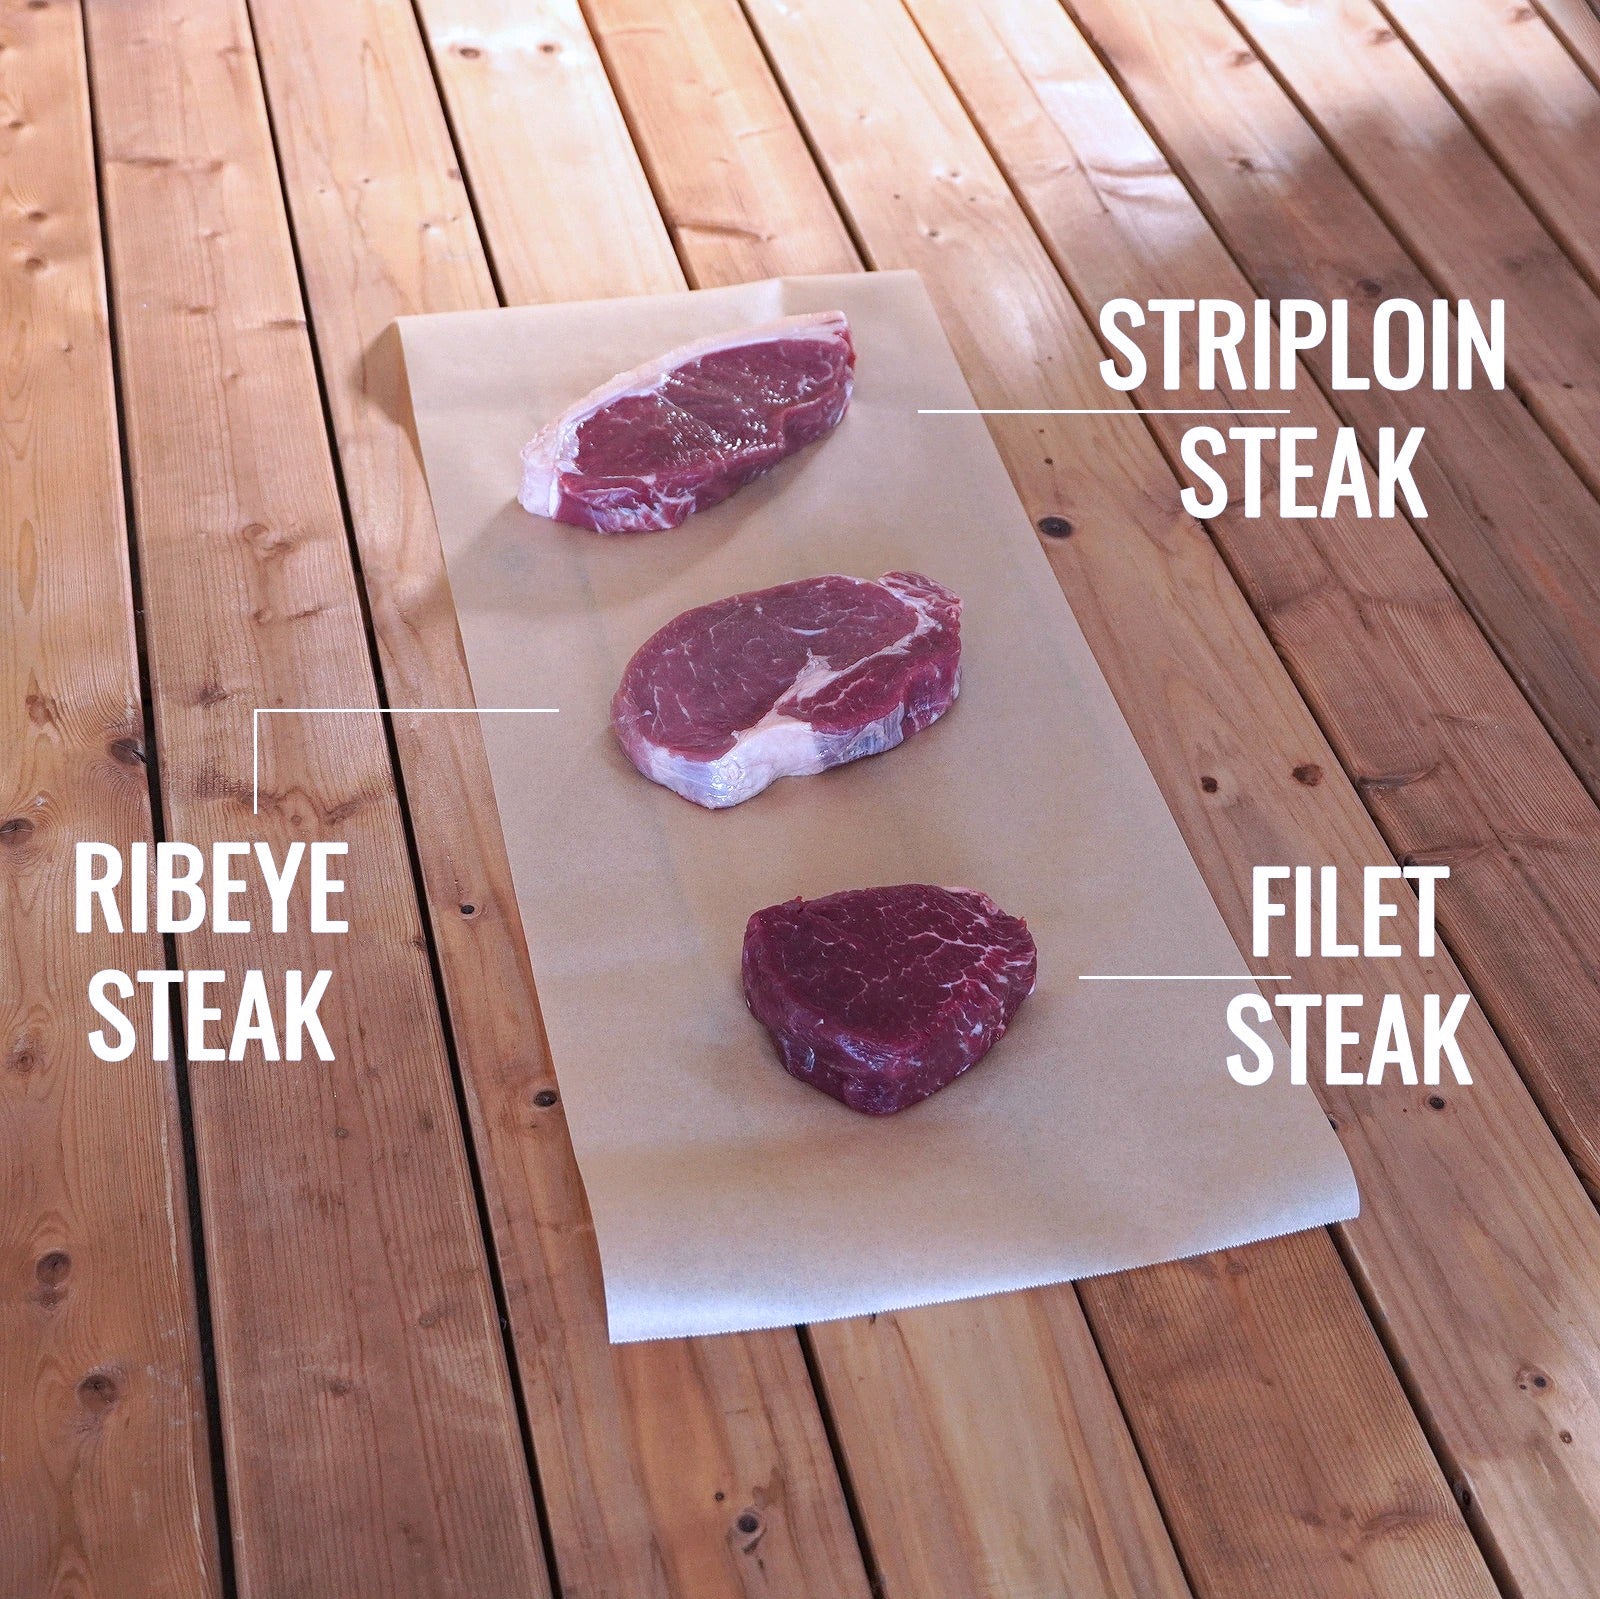 Grass-Fed Beef Striploin Steak New Zealand 200g 10-Pack (2kg) - Horizon Farms